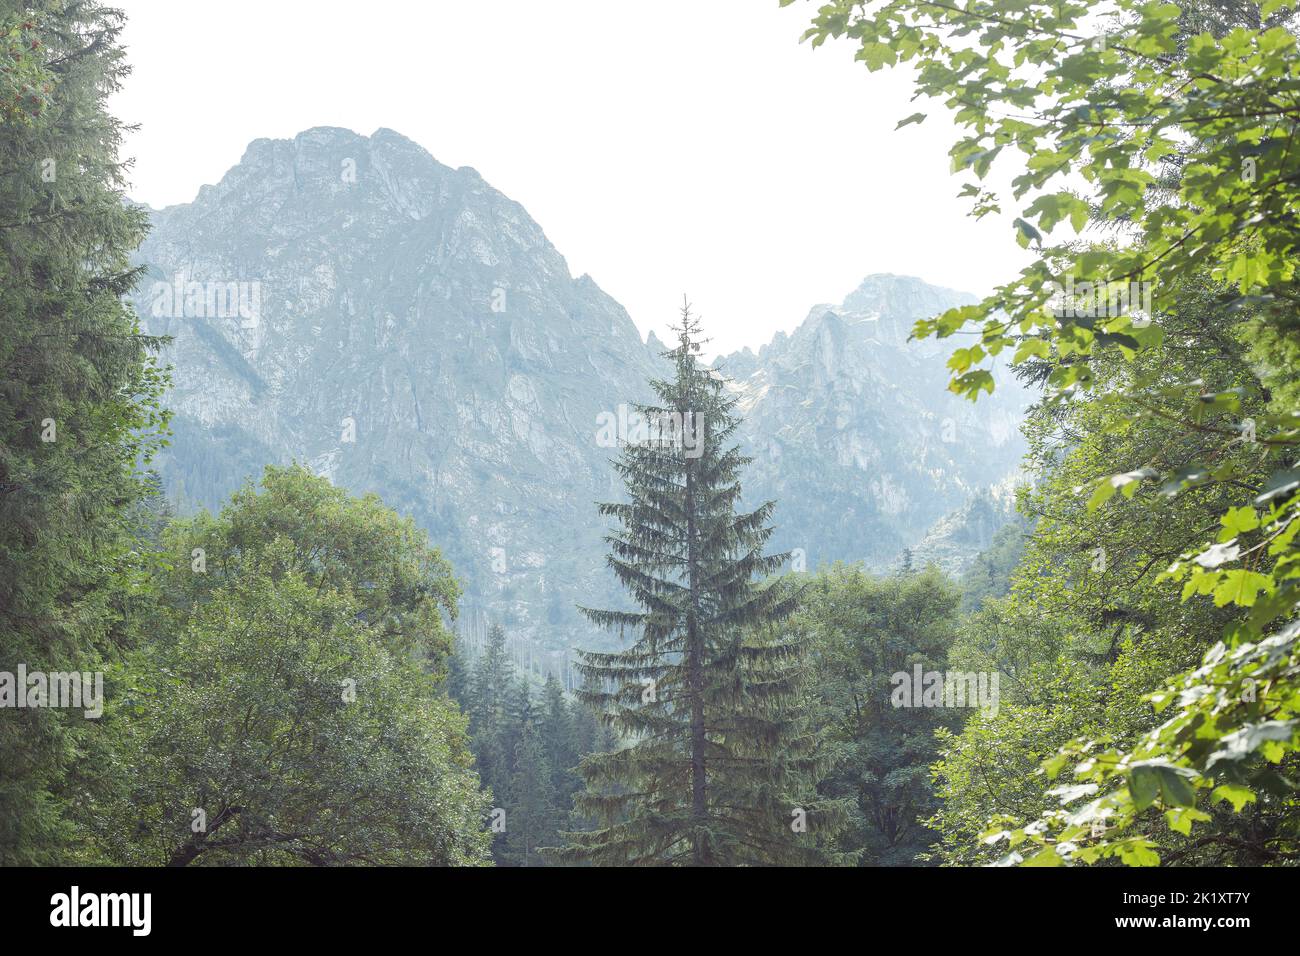 Berge und immergrüner Nadelwald, Panoramaszene. Reisen, Trekking, Camping, Wandern Abenteuer in der Natur Stockfoto